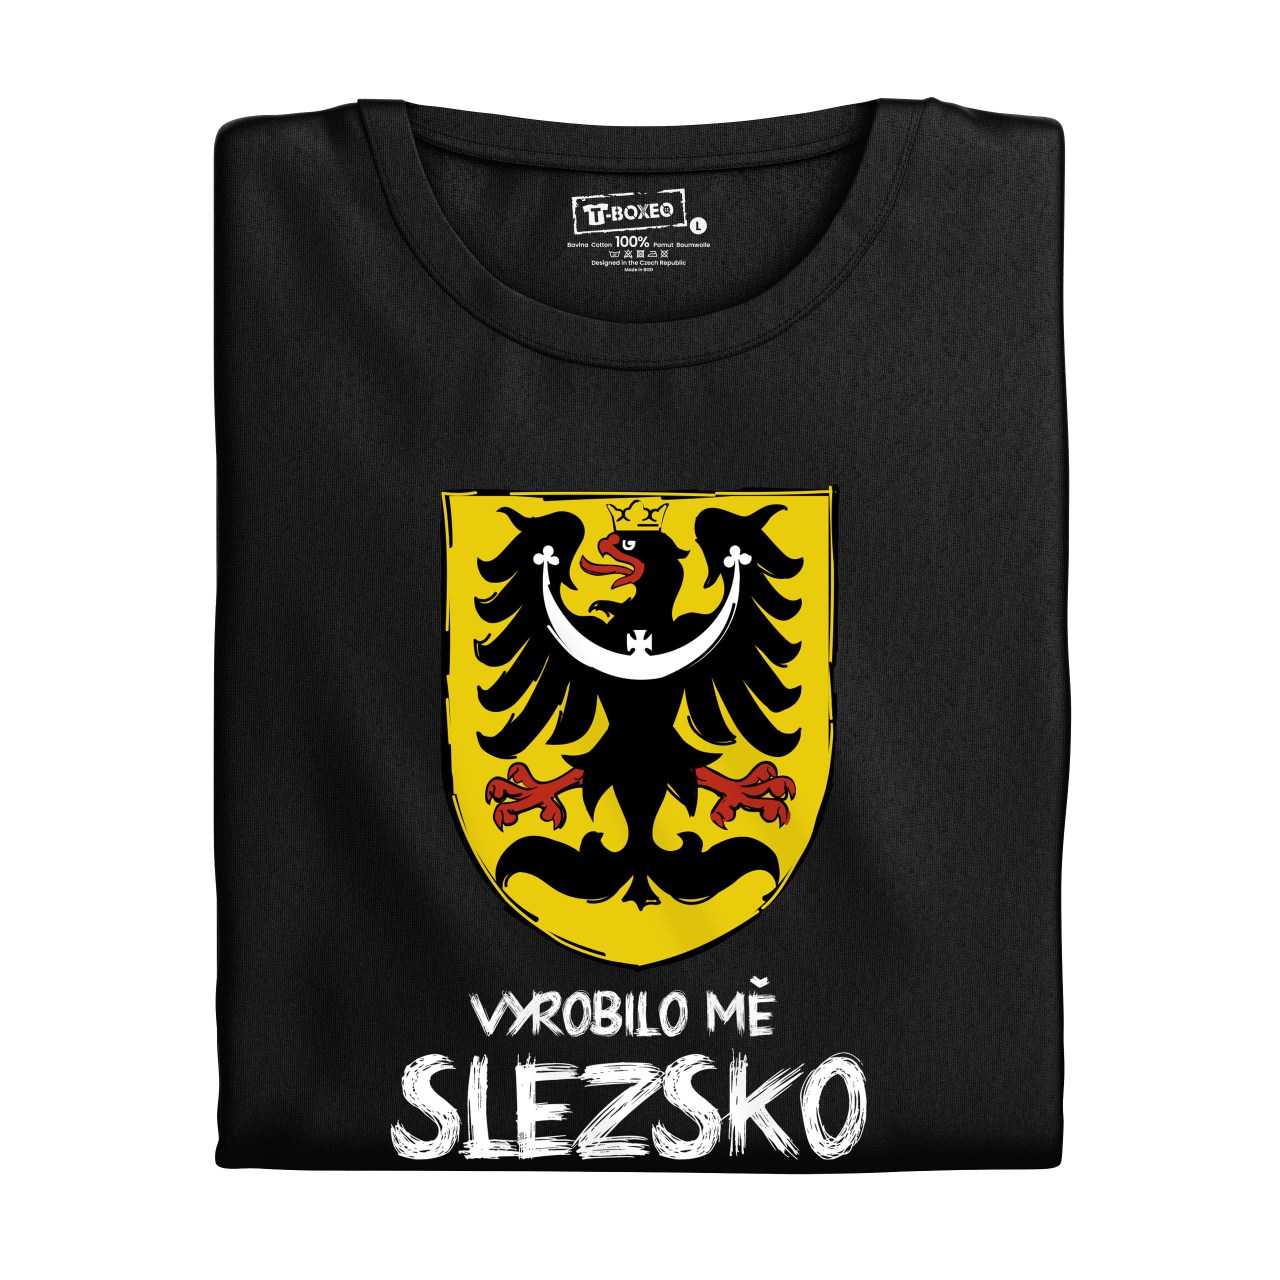 Dámské tričko s potiskem “Vyrobilo mě Slezsko” 